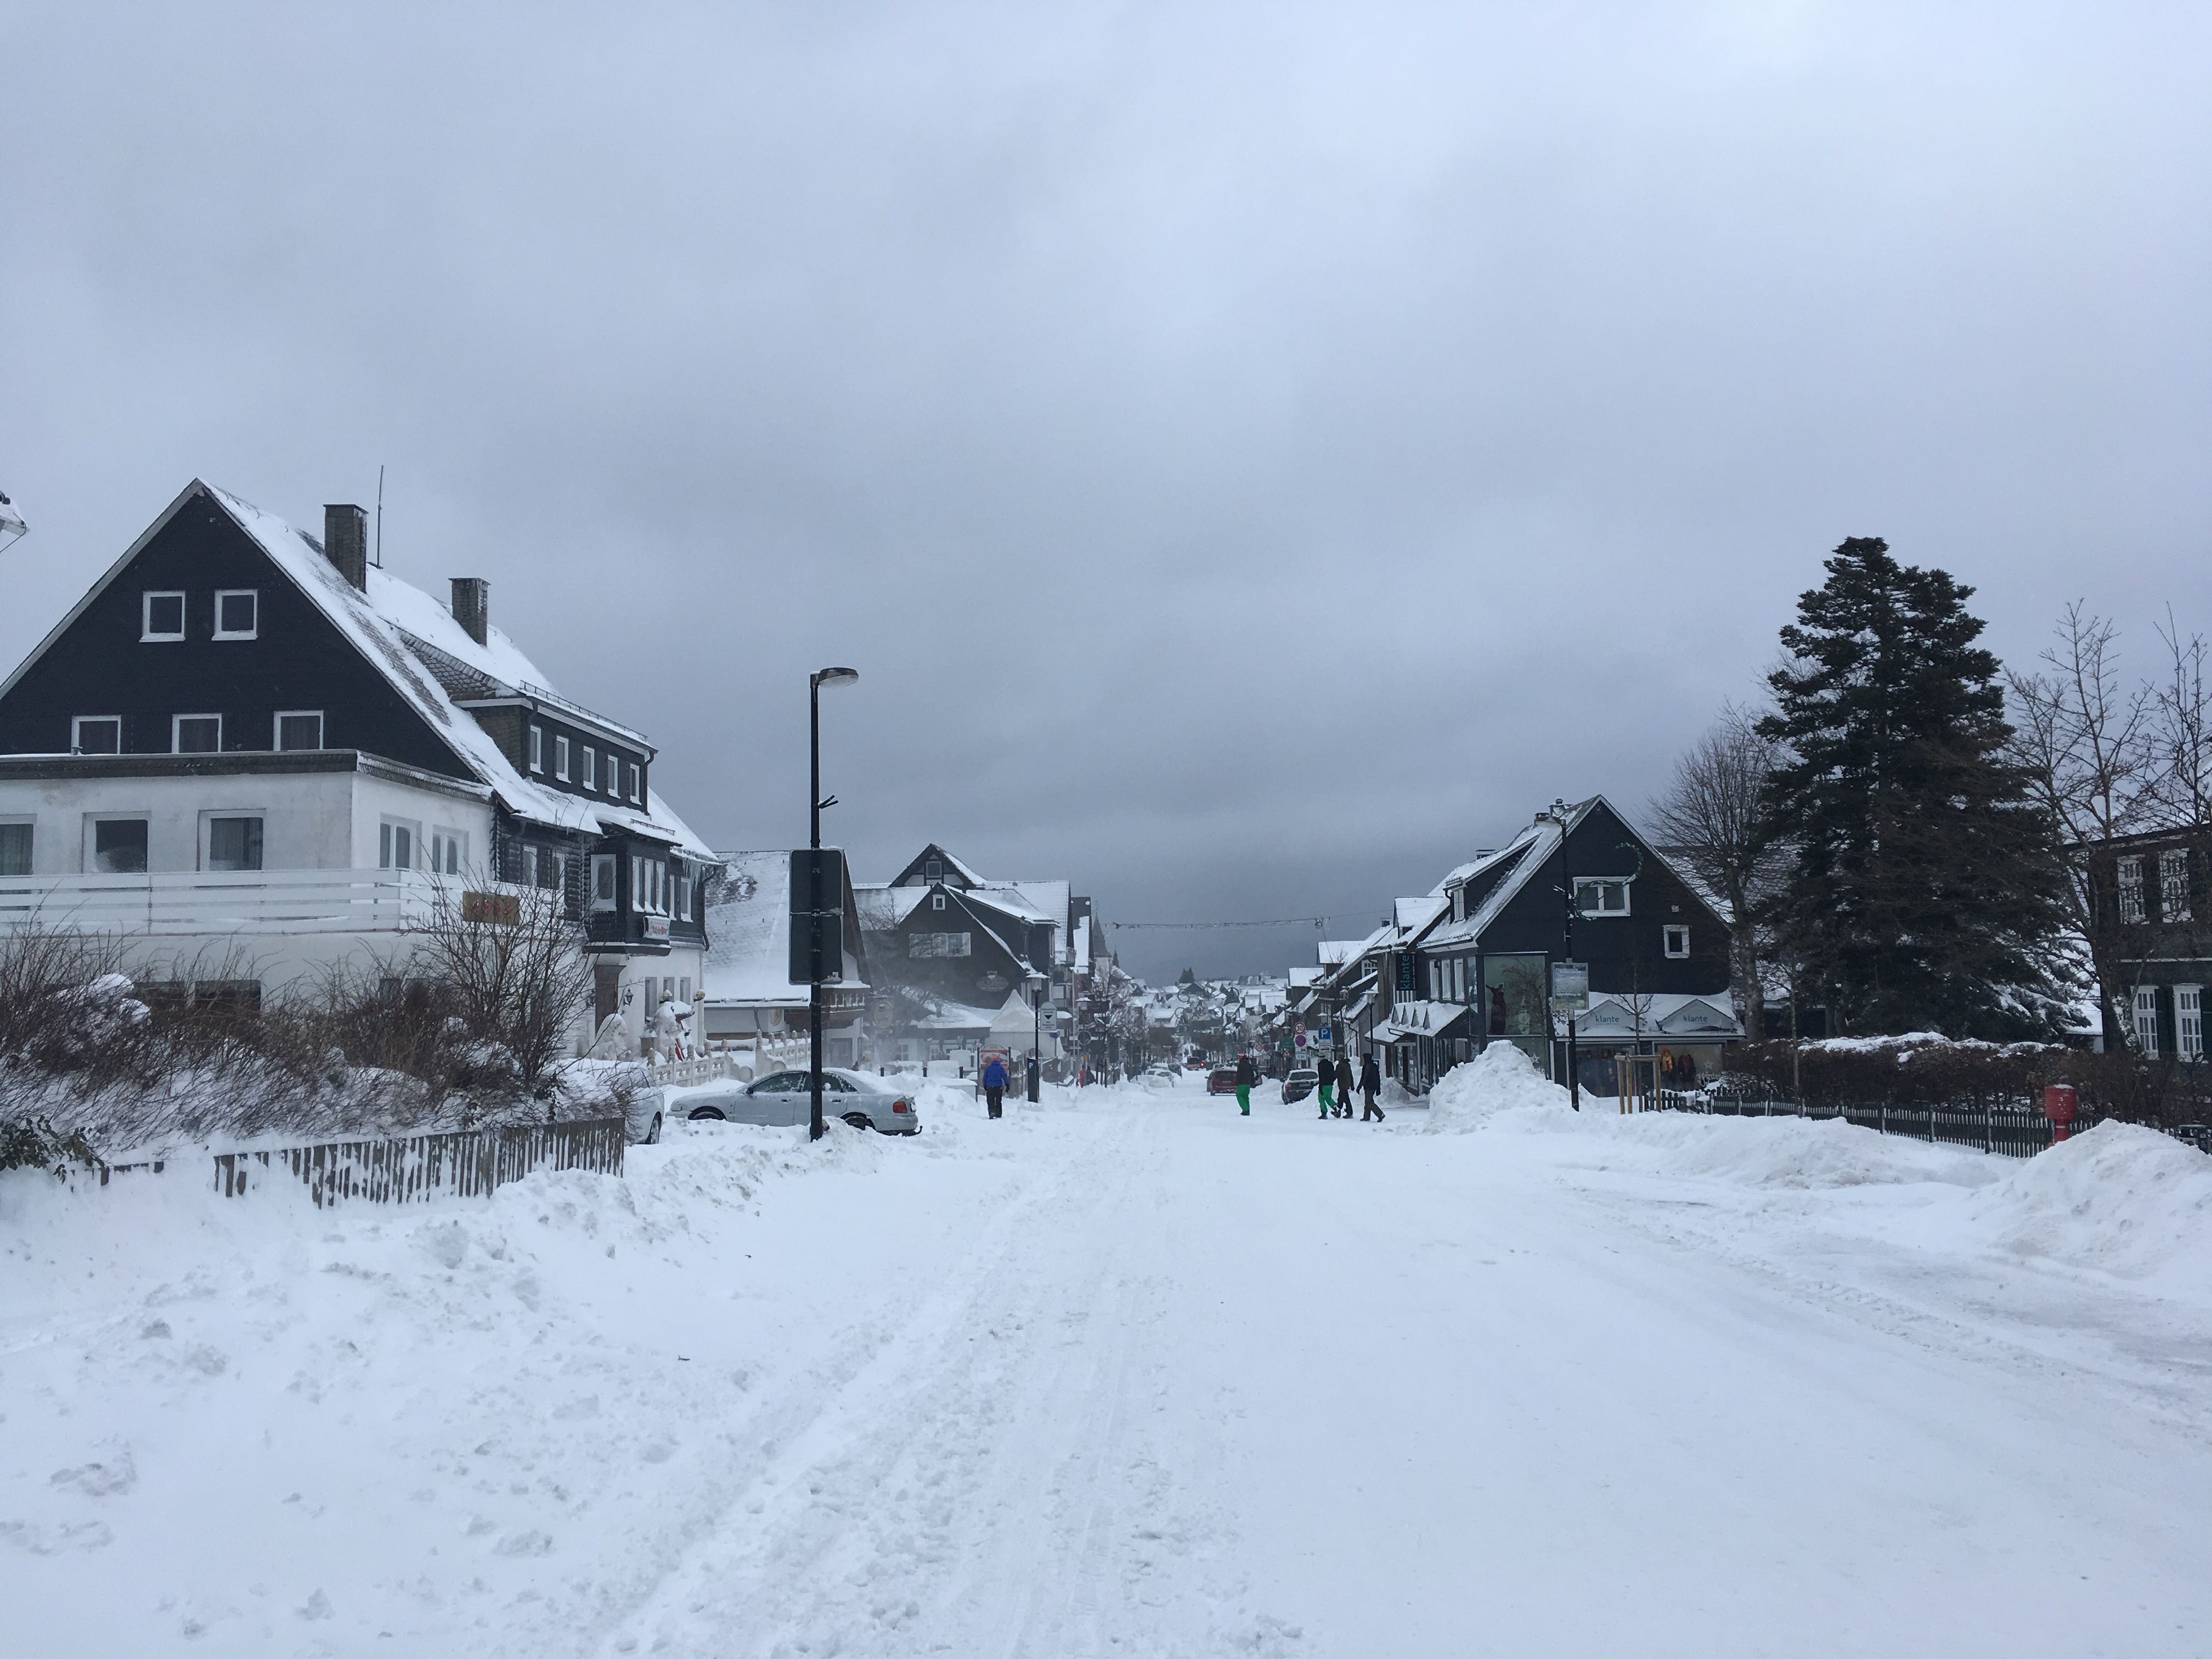 In Winterberg zelf liggen de straten nog vol met sneeuw